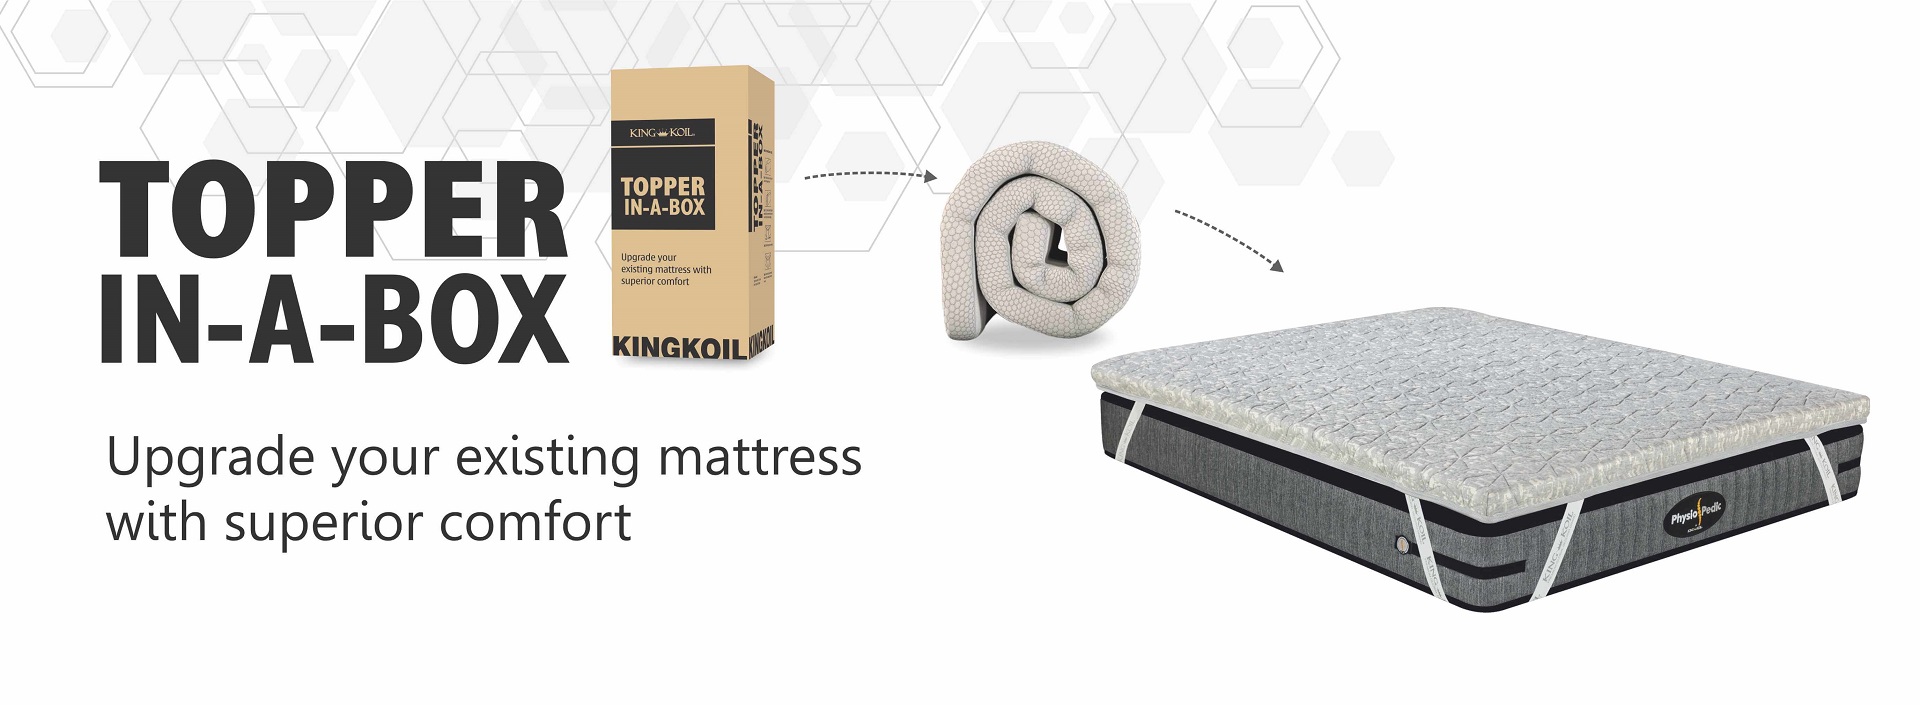 foam mattress topper in india